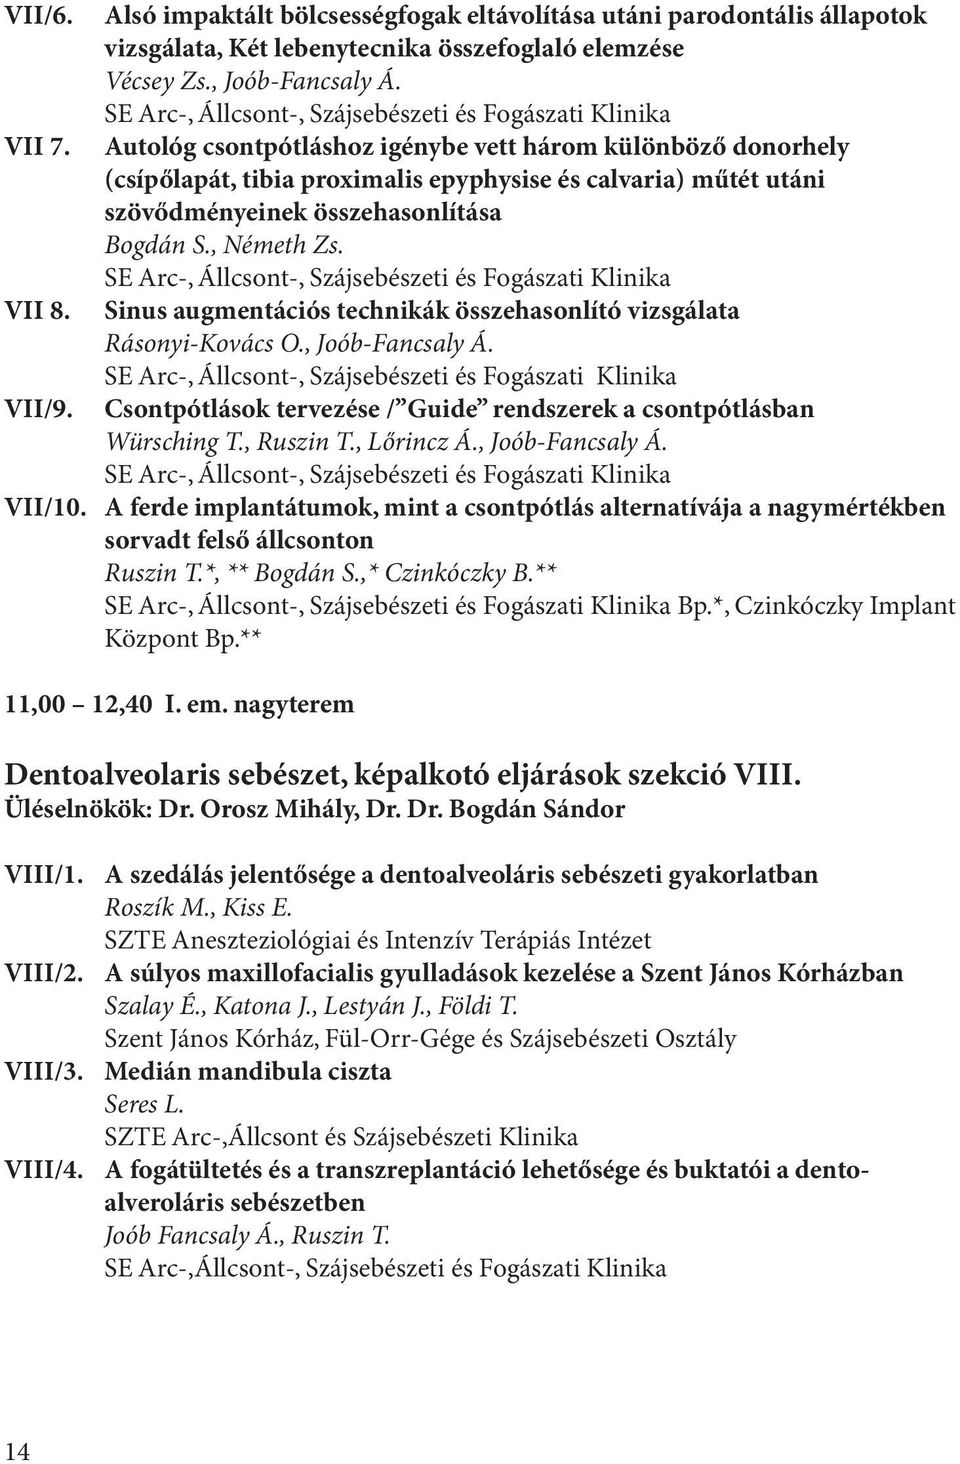 sinus augmentációs technikák összehasonlító vizsgálata Rásonyi-Kovács O., Joób-Fancsaly Á. Csontpótlások tervezése / Guide rendszerek a csontpótlásban Würsching T., Ruszin T., Lőrincz Á.